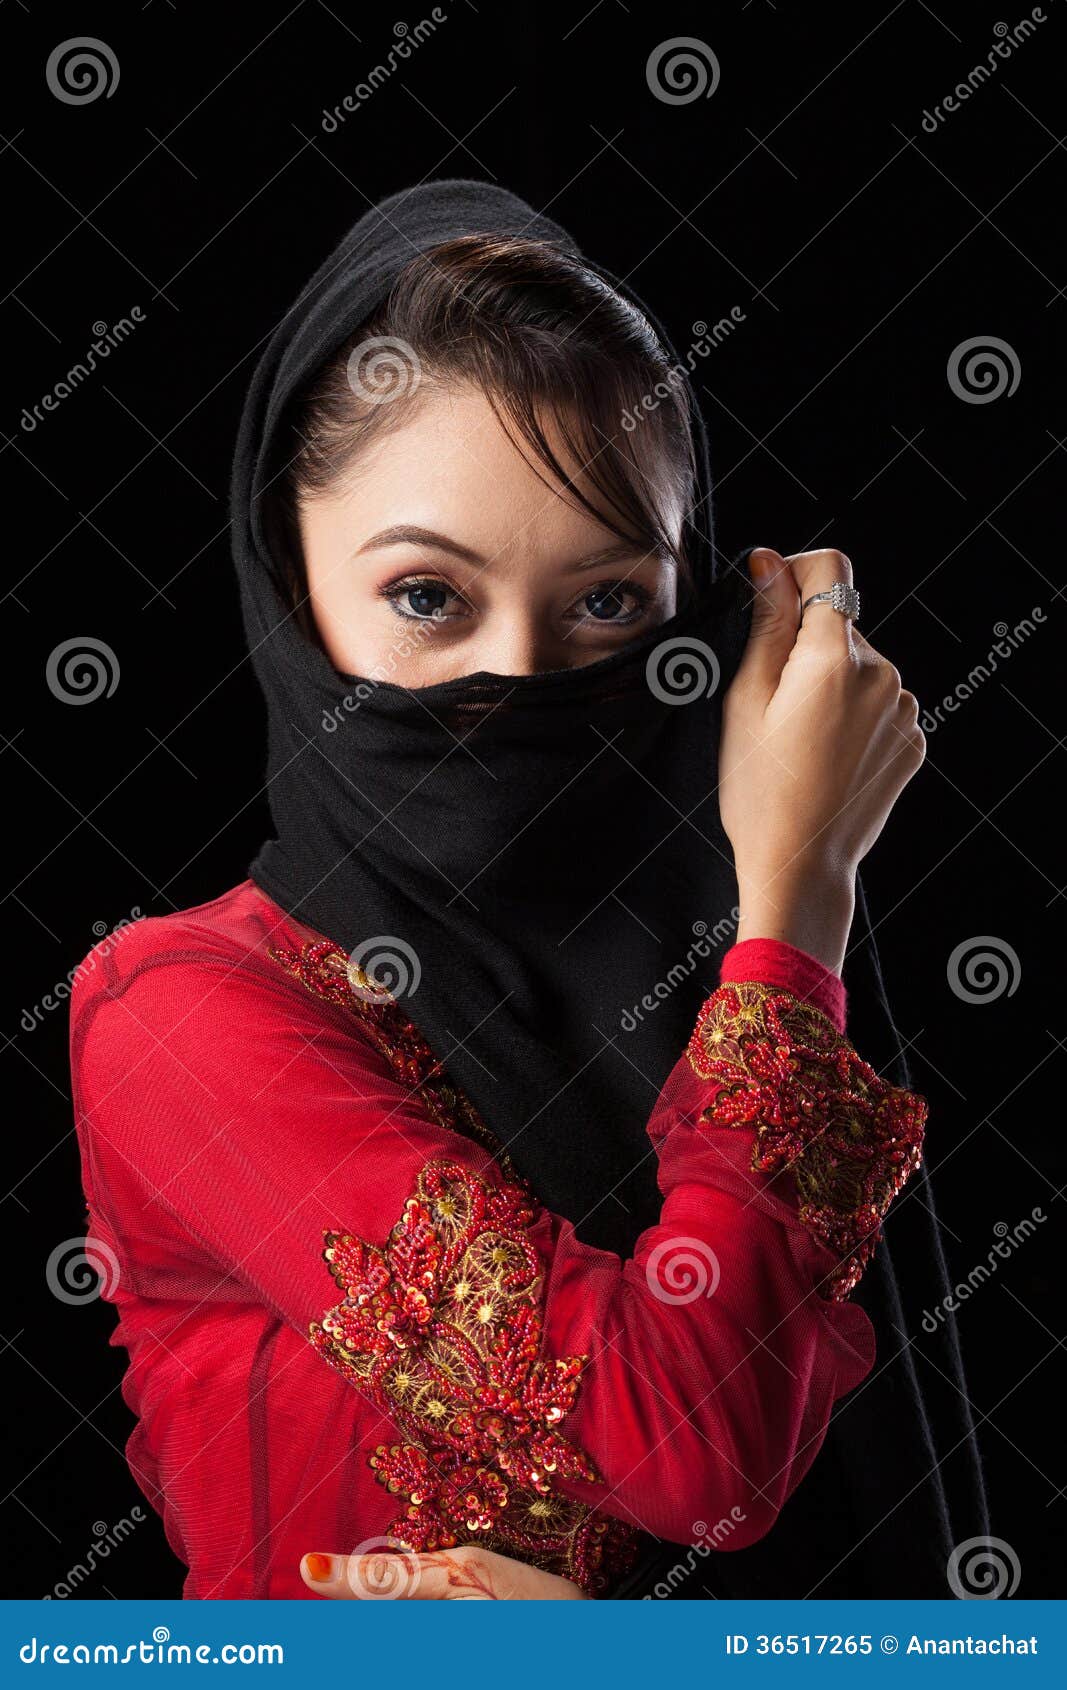 Islamic girls pakistani Popular Pakistani